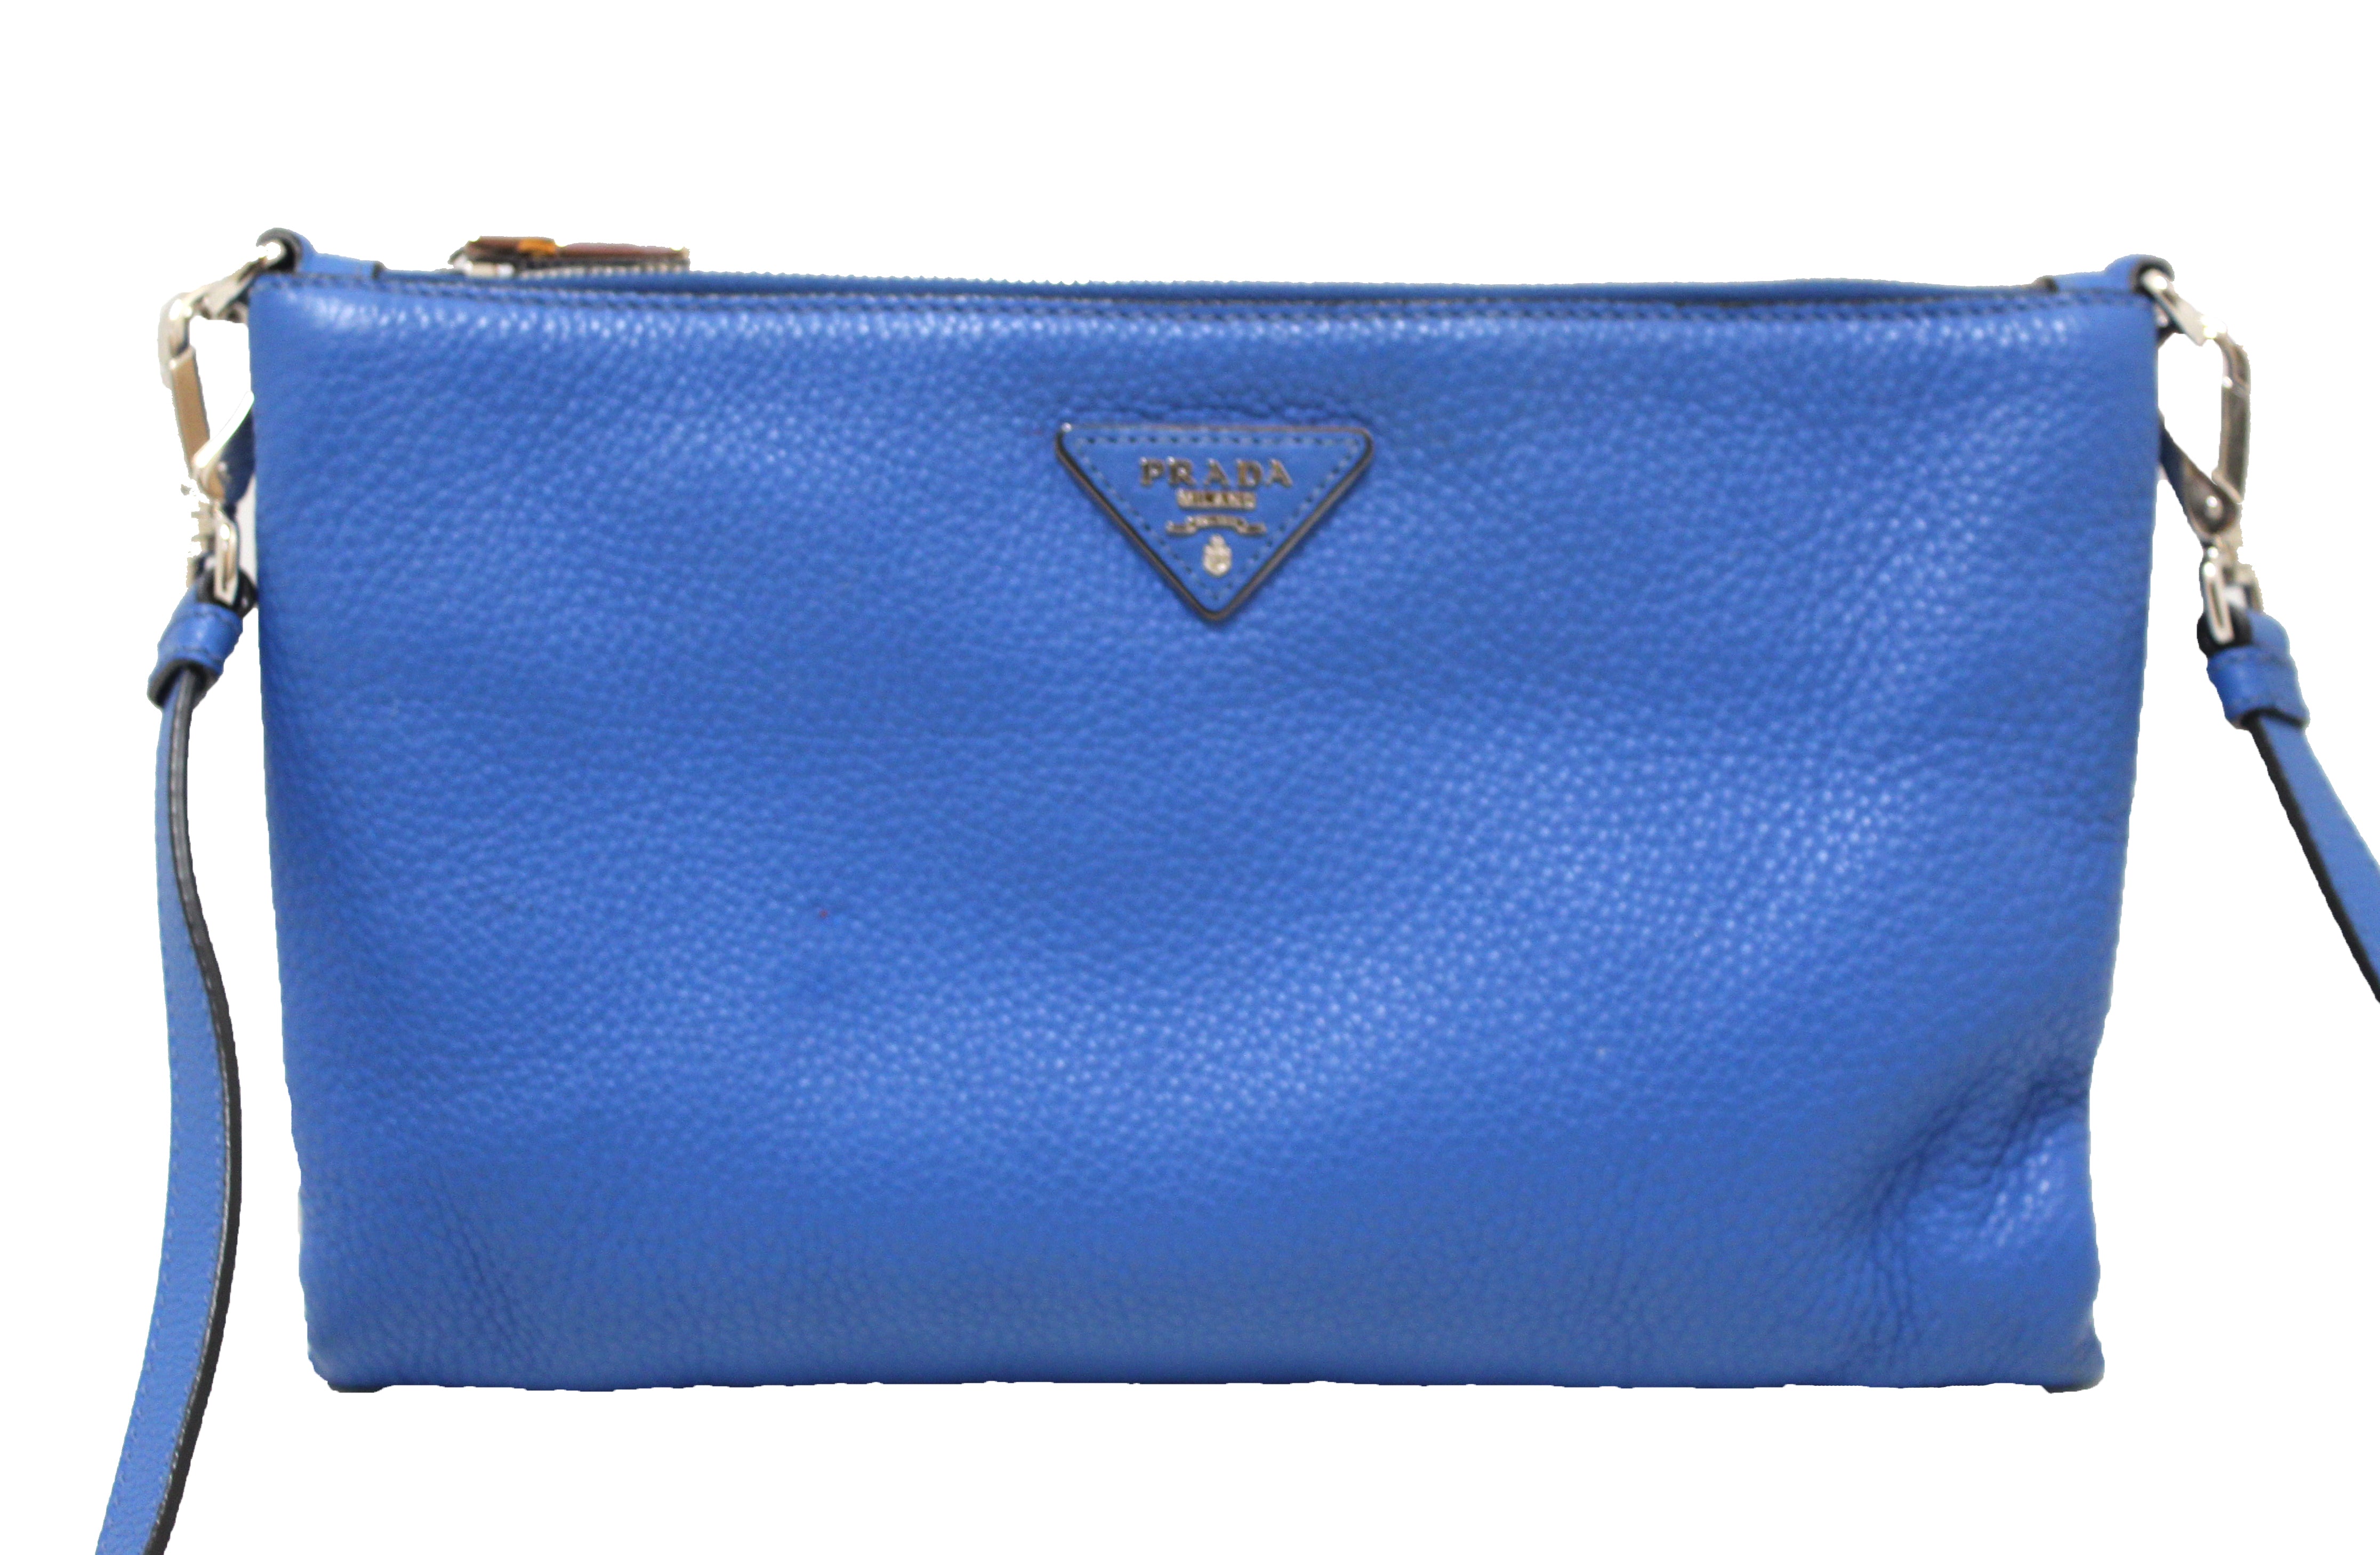 Prada Saffiano Leather Blue Clutch Bag